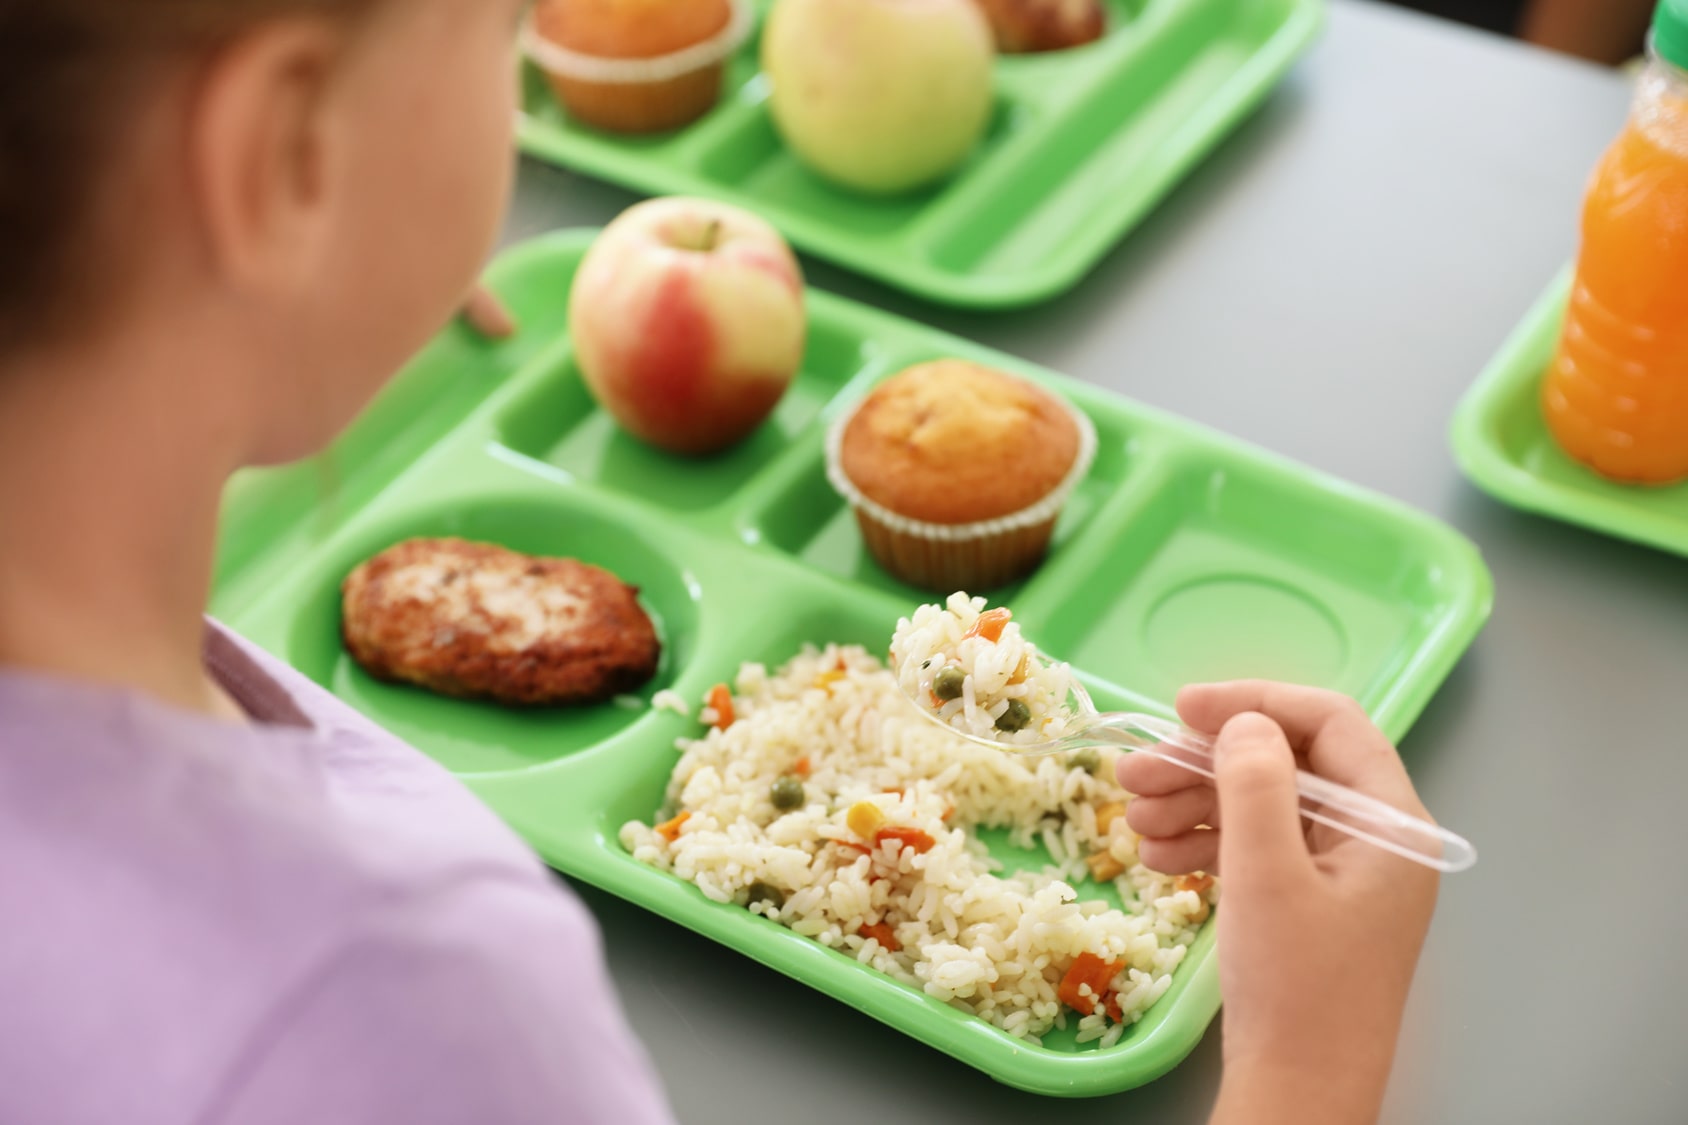 Gesund und lecker soll es sein: Mittagessen in der Schule. (Foto:Fotoli/New Africa)